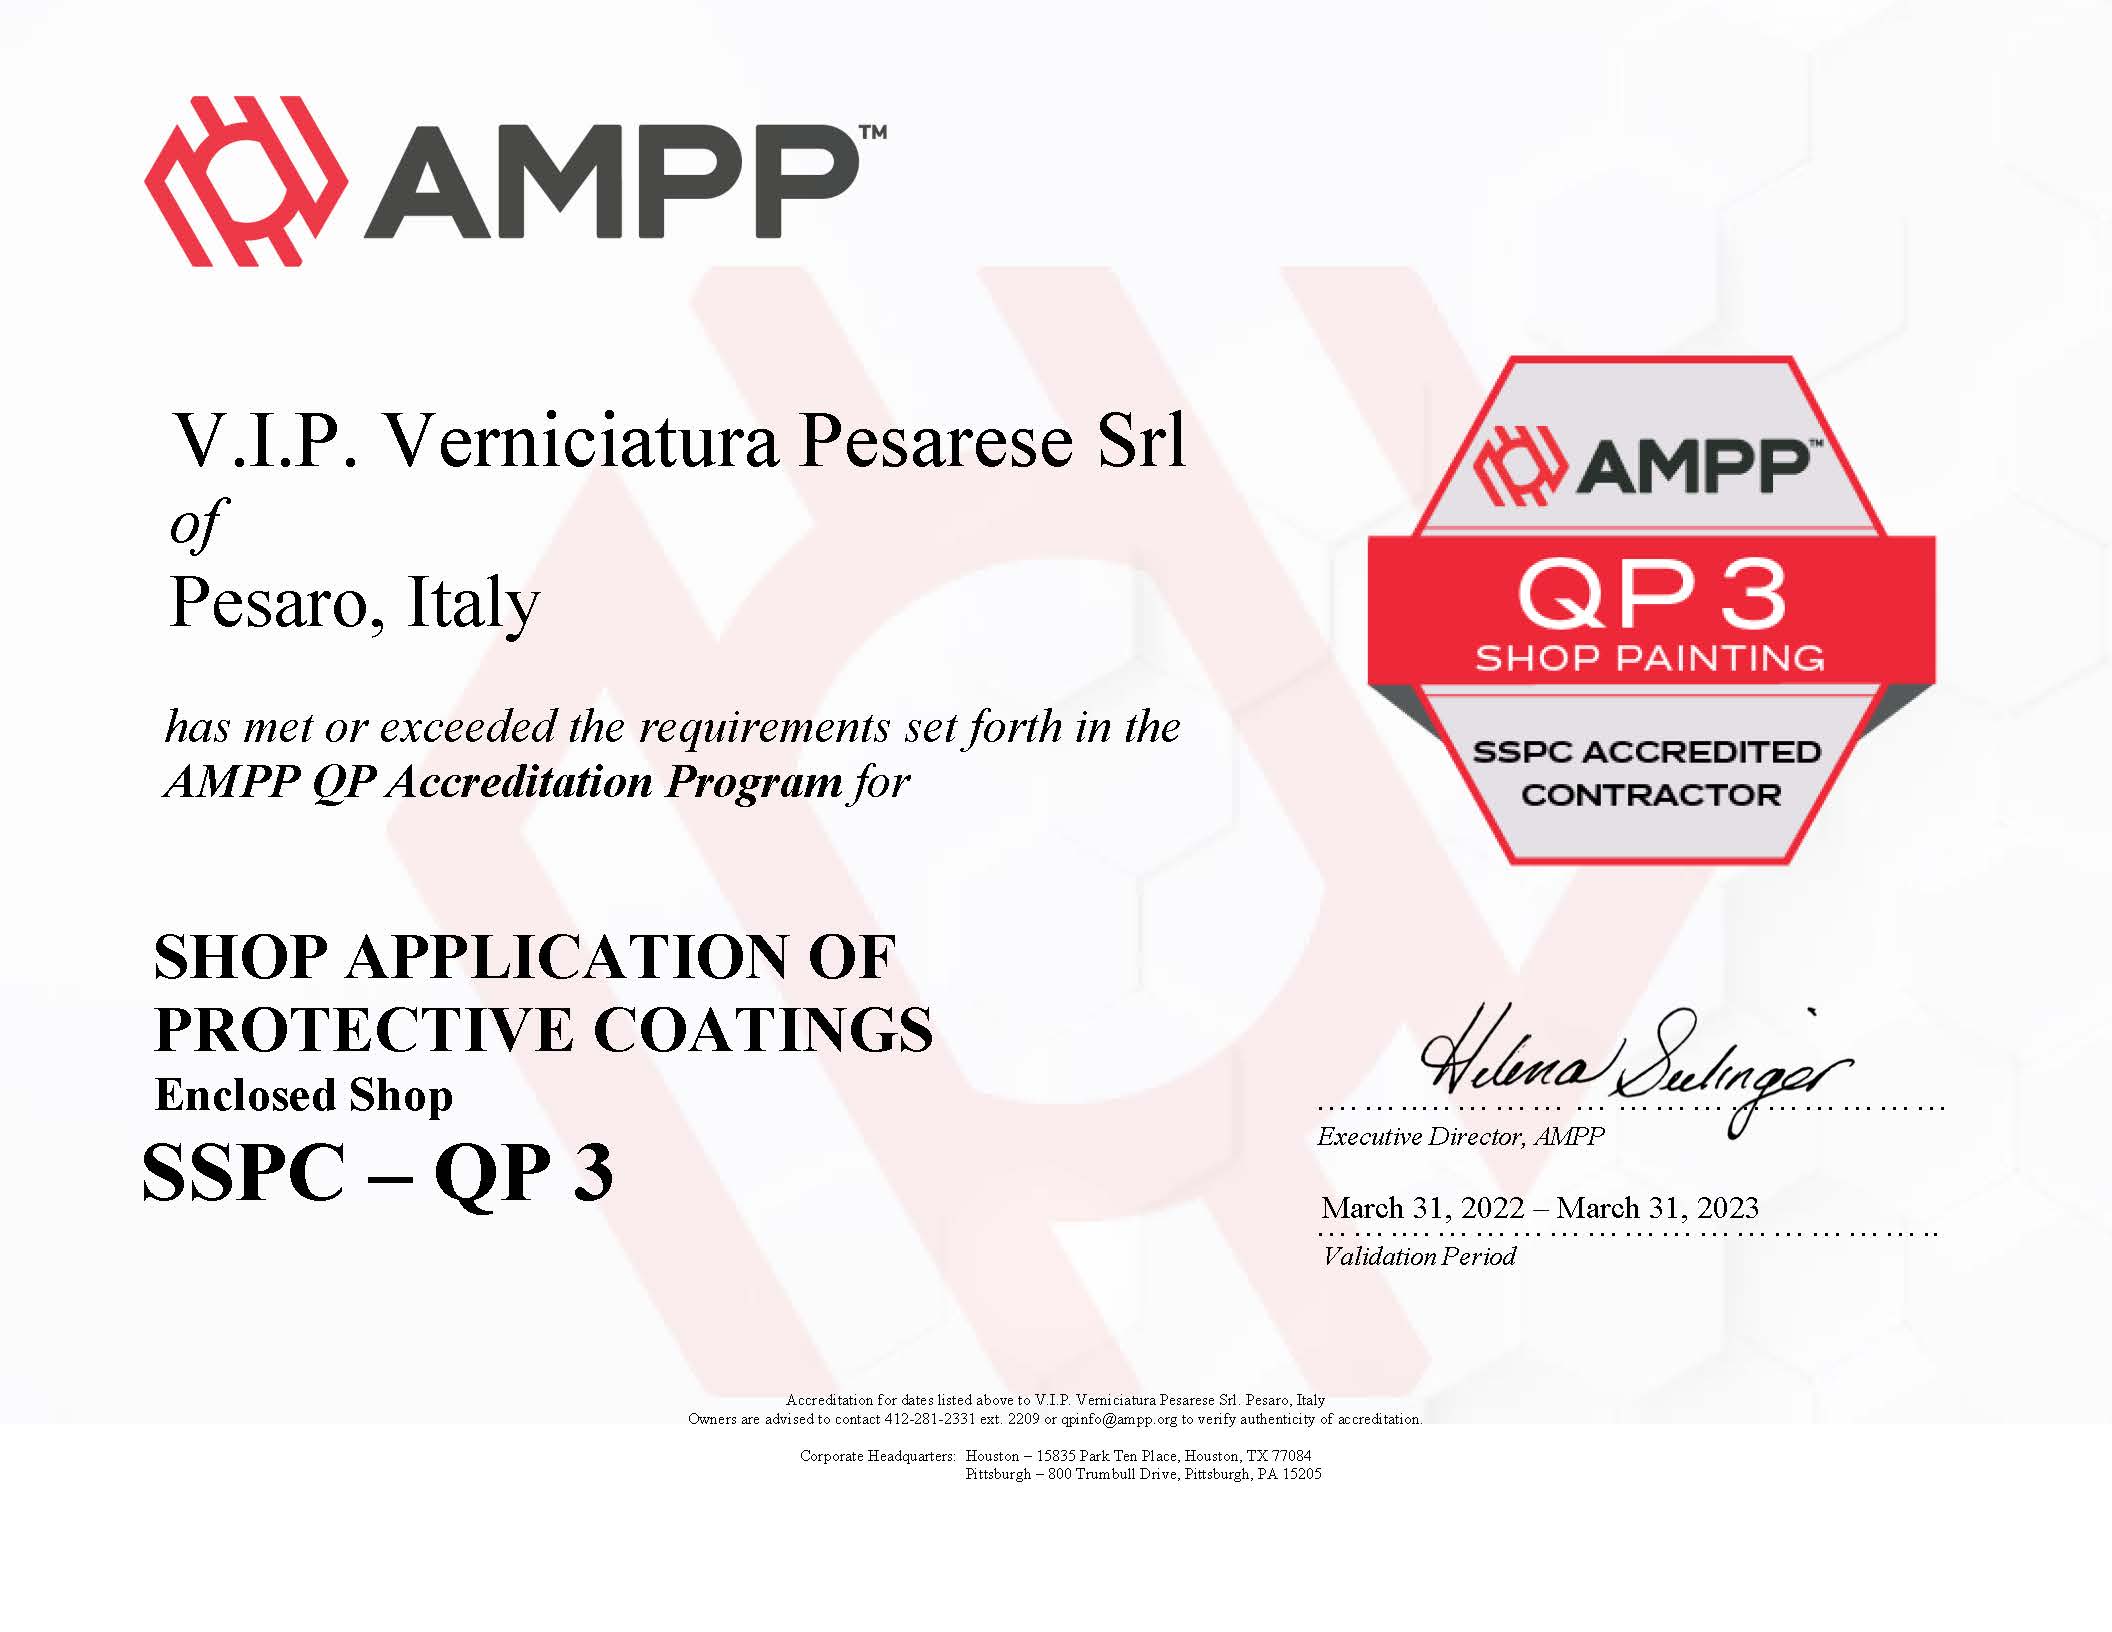 AMPP QP3 CERTIFICATE